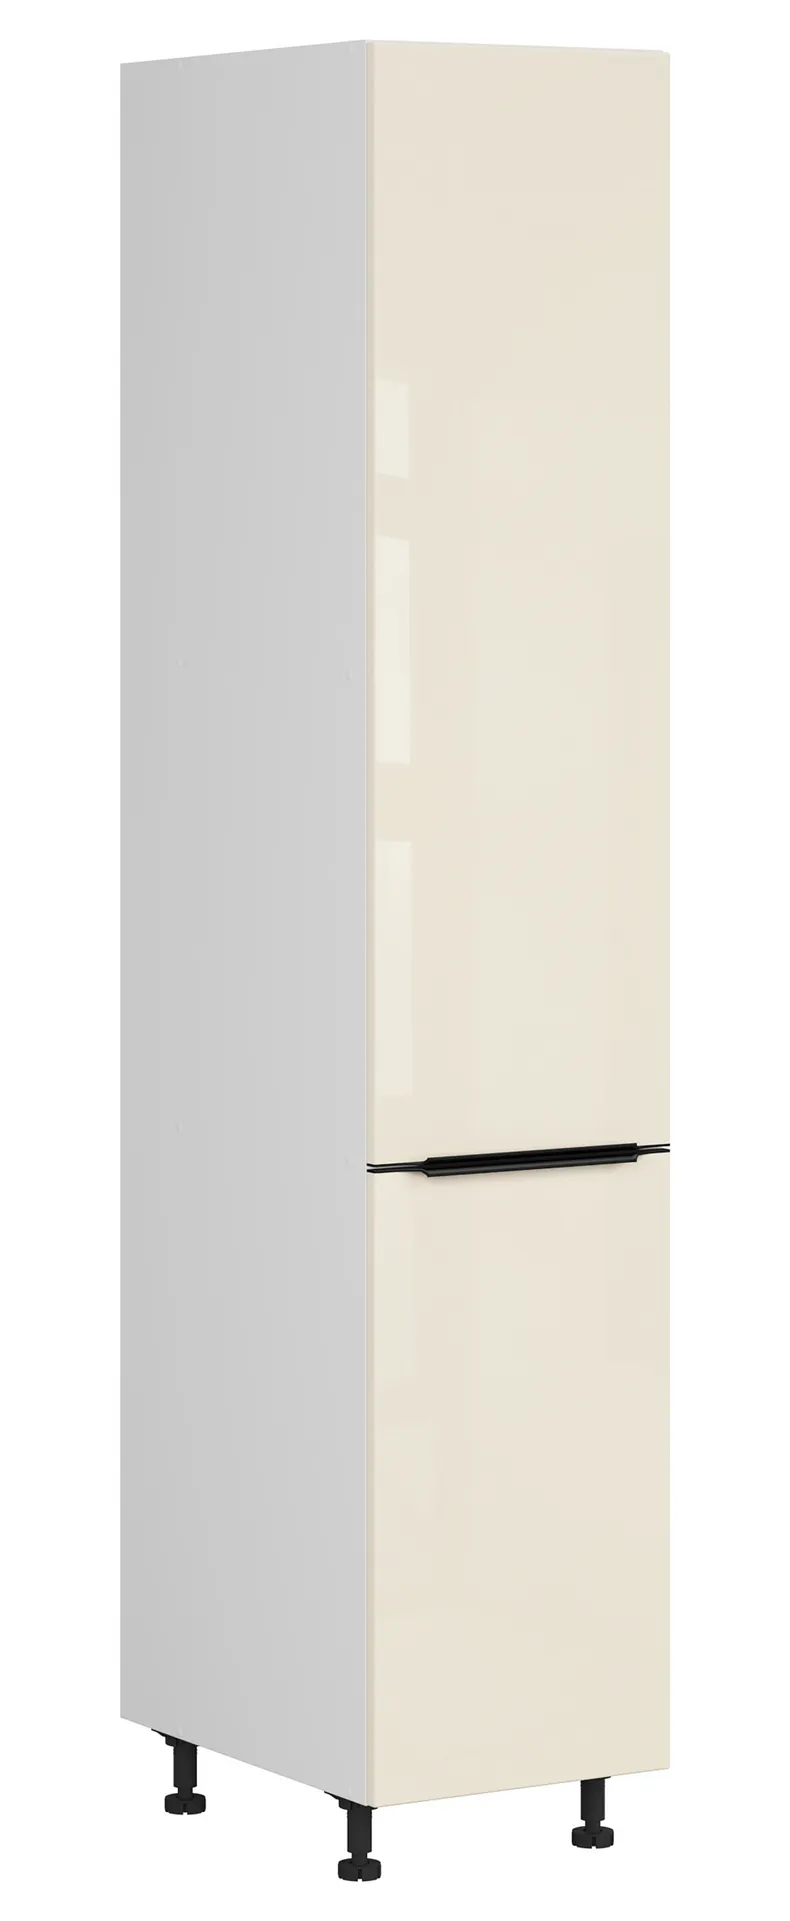 BRW Правосторонний кухонный шкаф Sole L6 40 см магнолия жемчуг, альпийский белый/жемчуг магнолии FM_D_40/207_P/P-BAL/MAPE фото №2